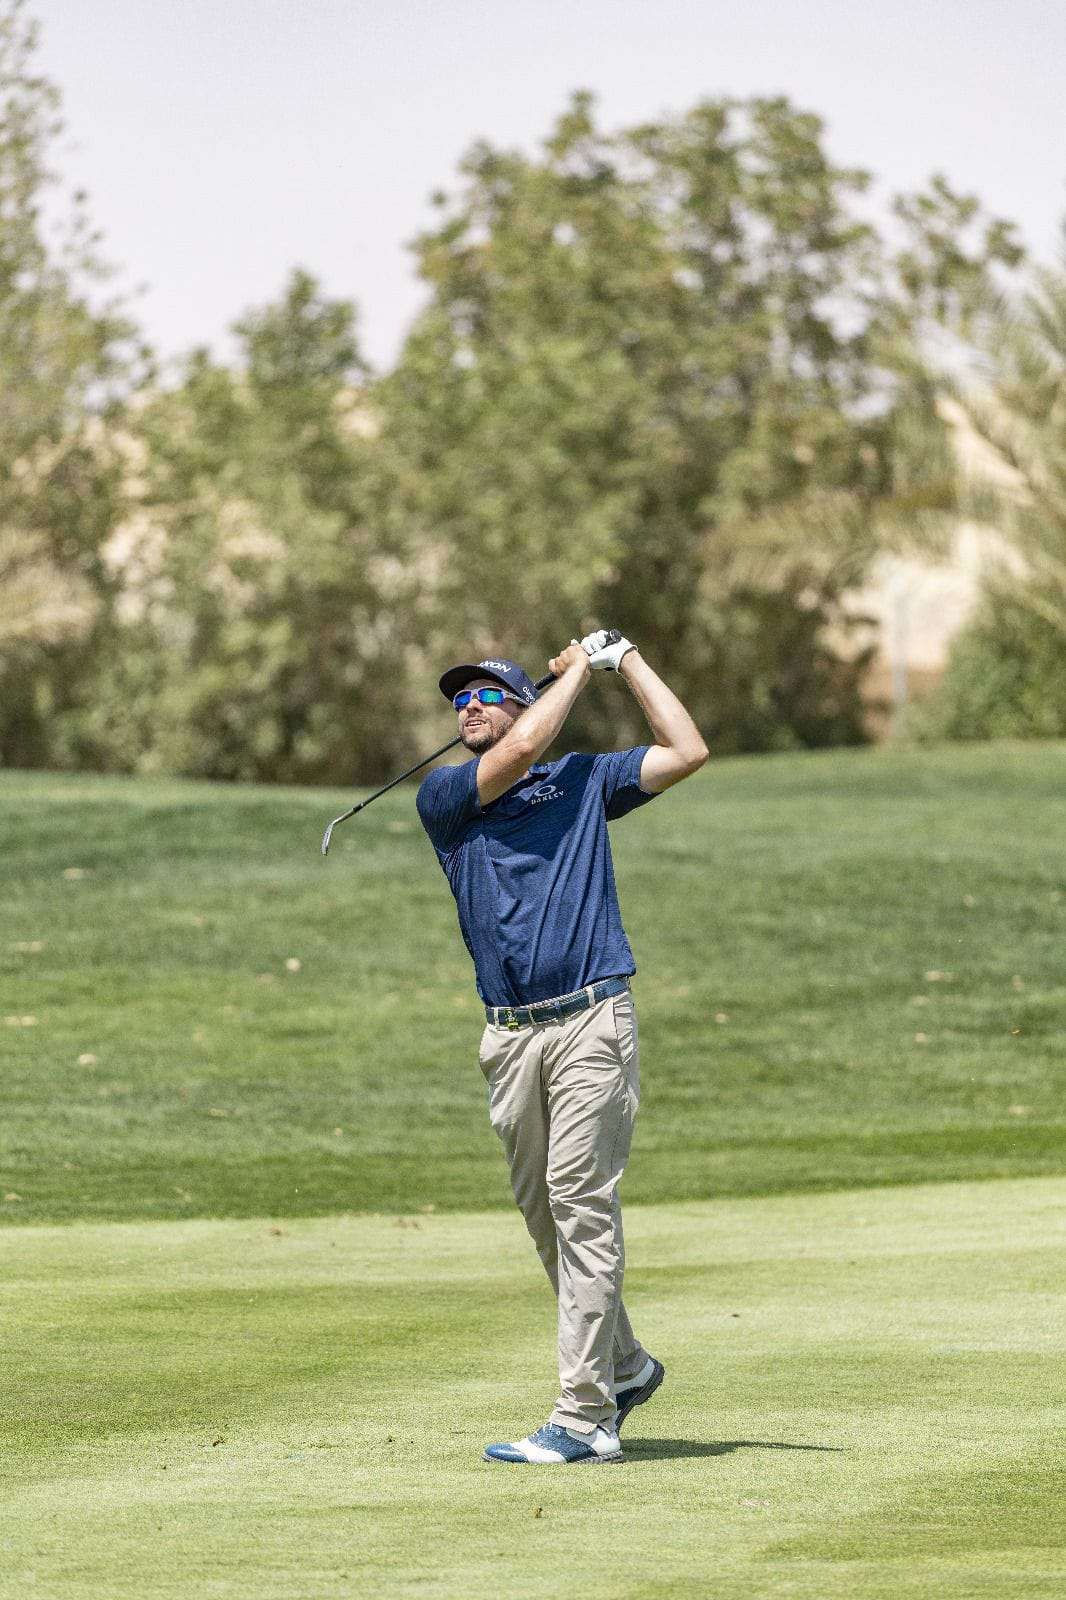 الأمريكي جون كاتلين يتوج بلقب بطولة السعودية المفتوحة للجولف